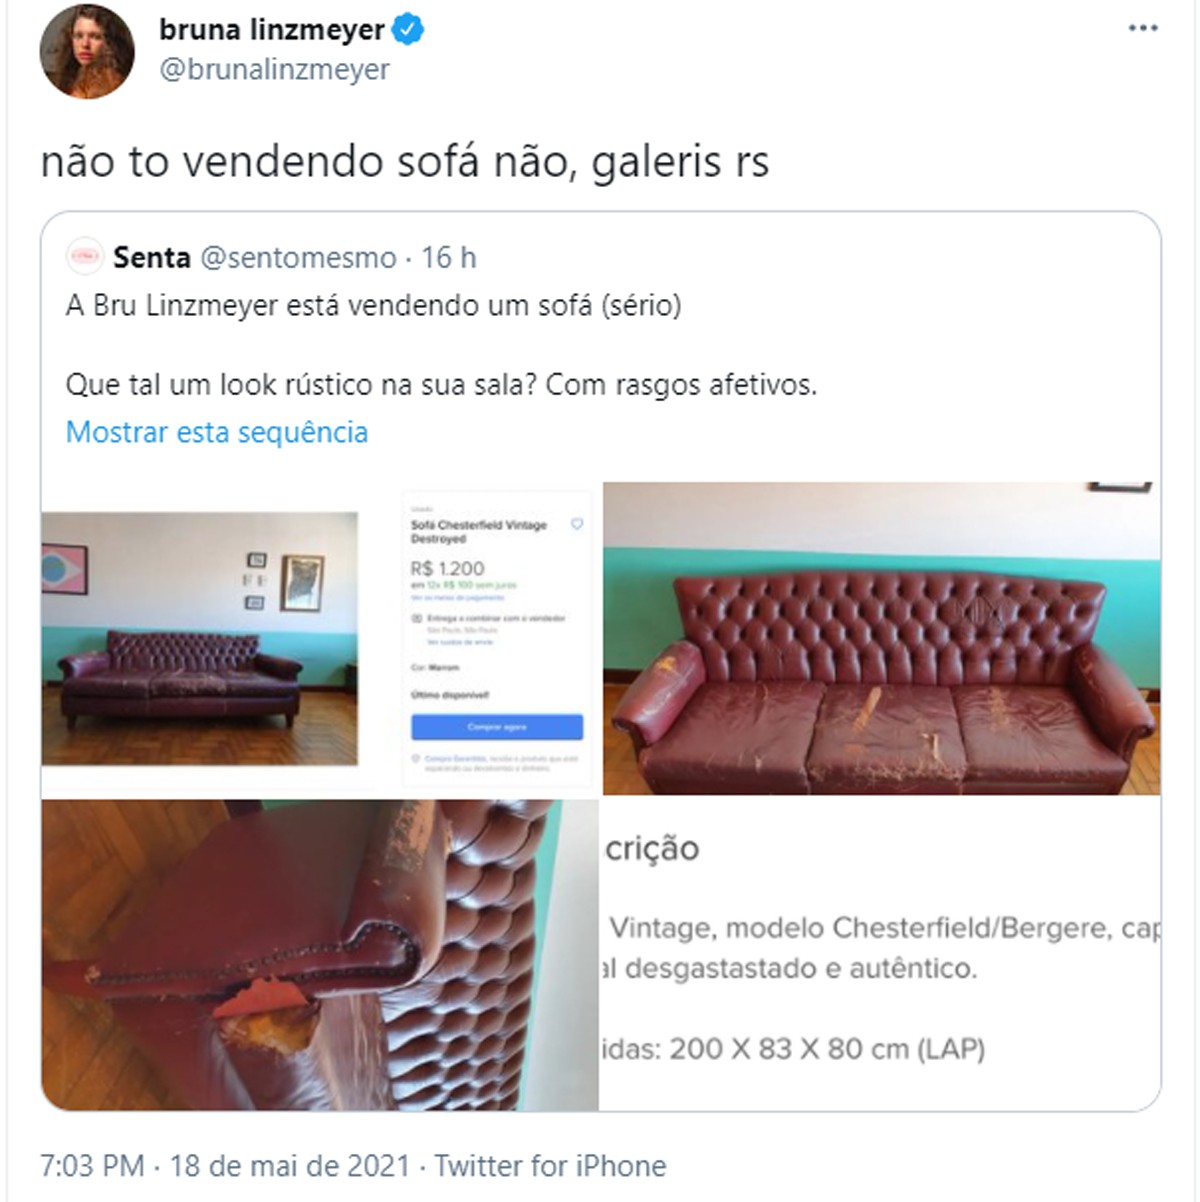 Suposto sofá à venda por Bruna Linzmeyer viraliza na web (Foto: Reprodução)